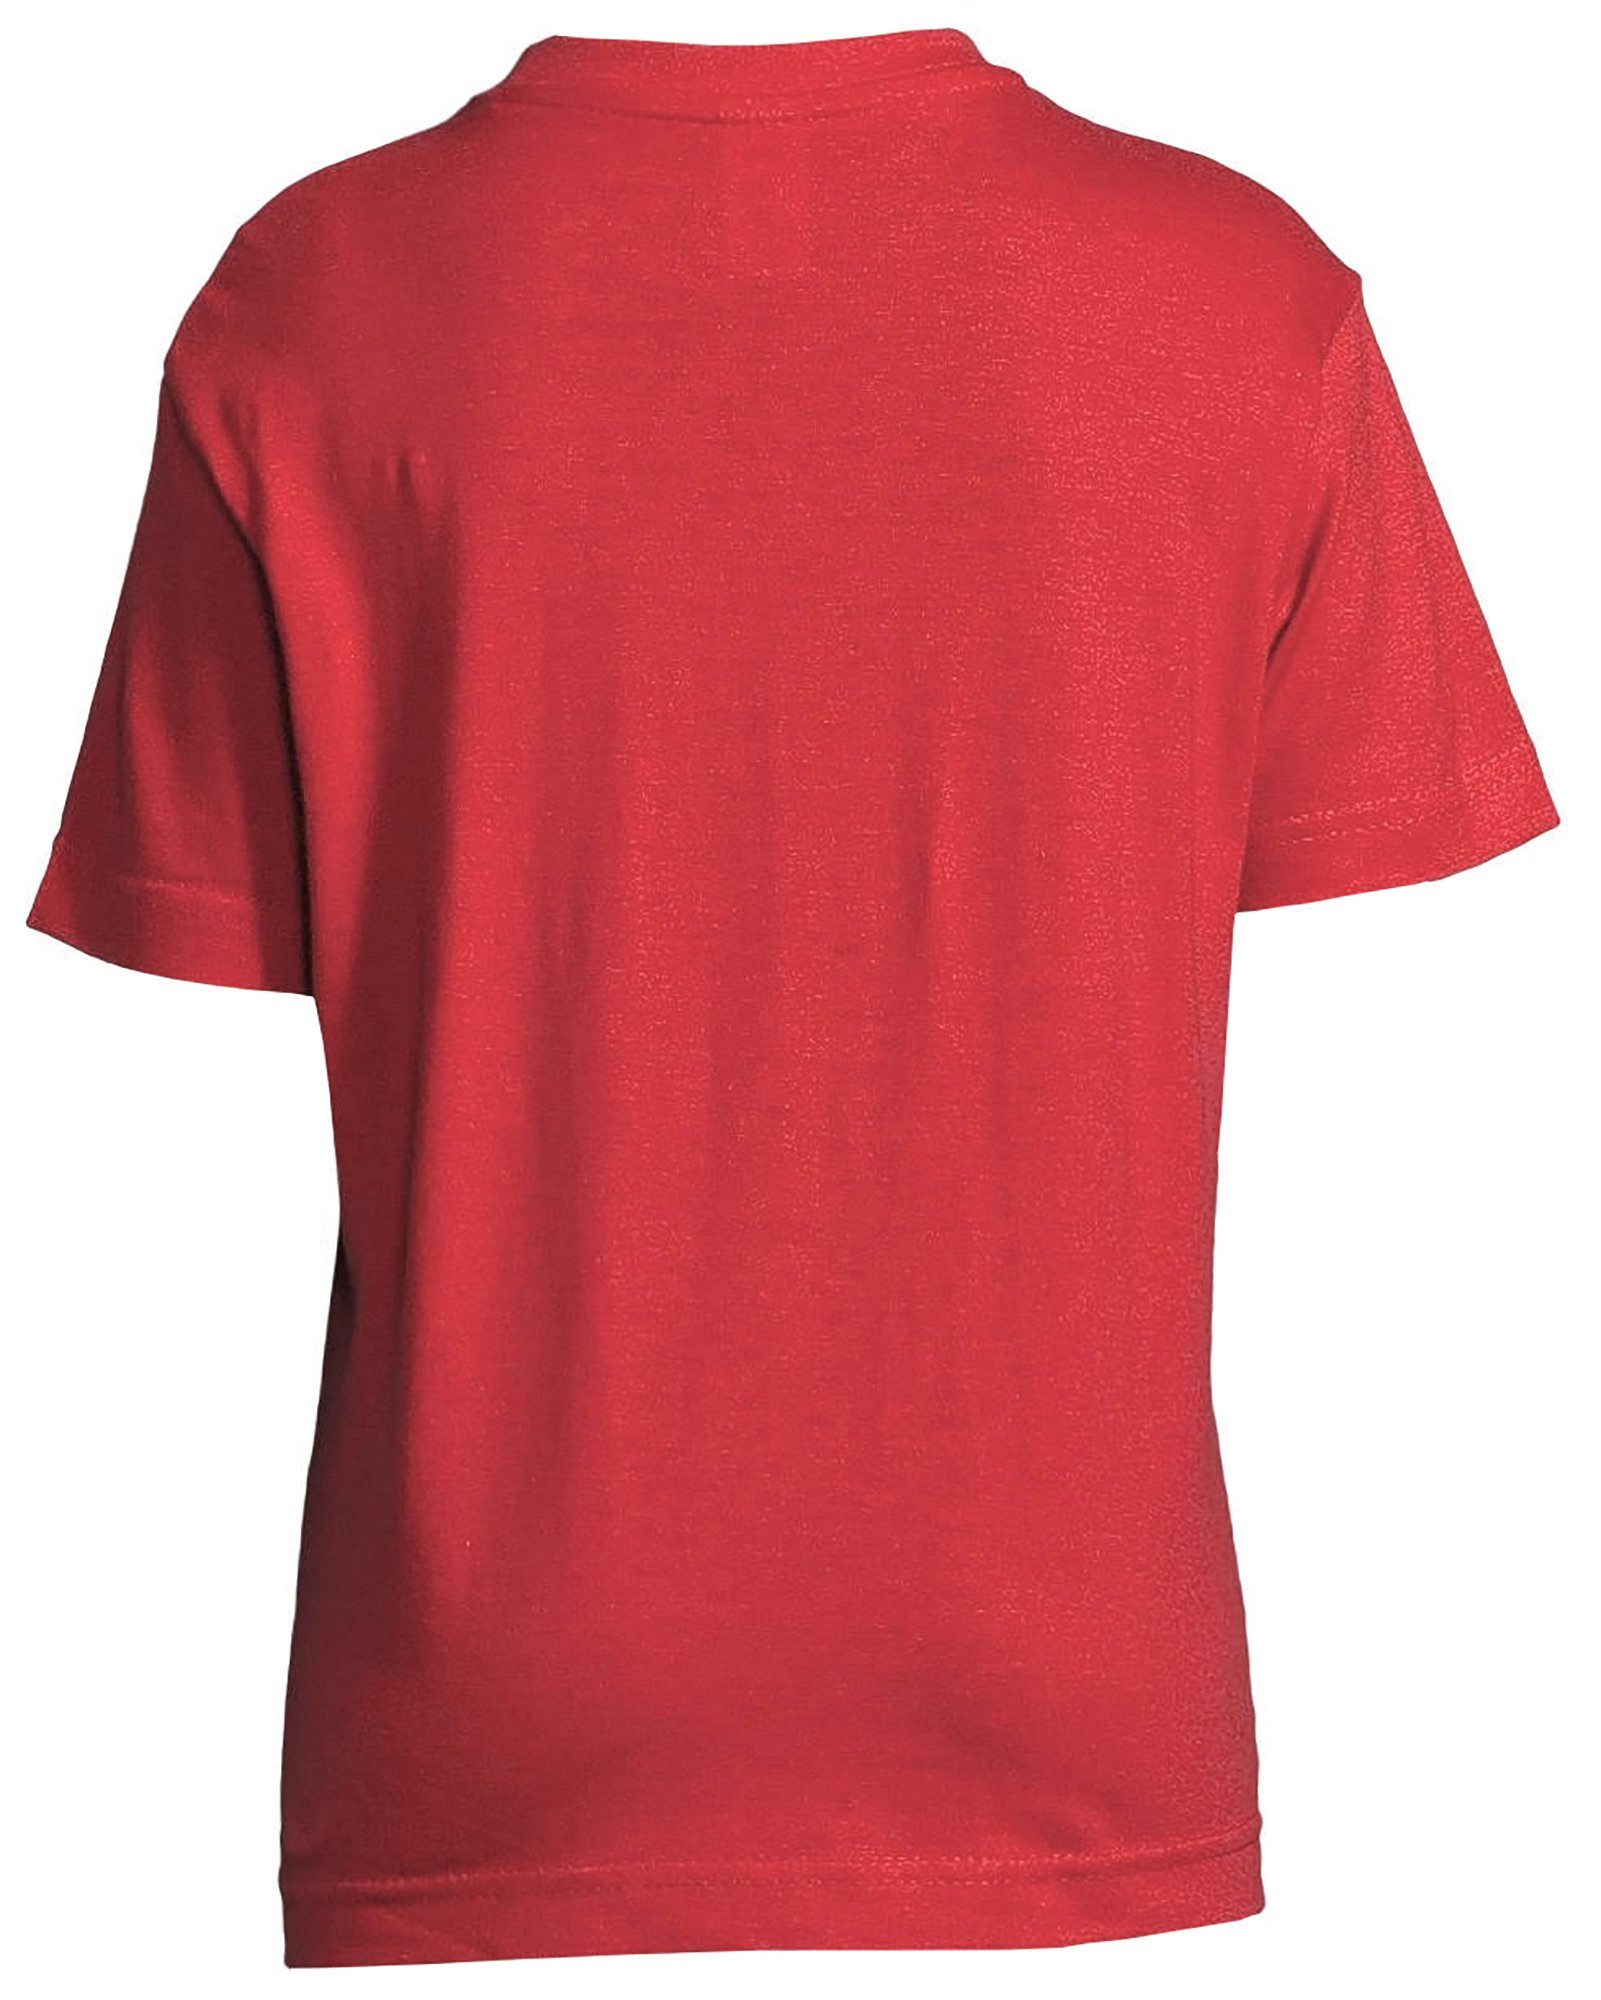 MyDesign24 Print-Shirt bedrucktes Mädchen i126 rosa, Katze Baumwollshirt Aufdruck, weiß, rot, Schlafshirt - Kissen auf T-Shirt mit schwarz